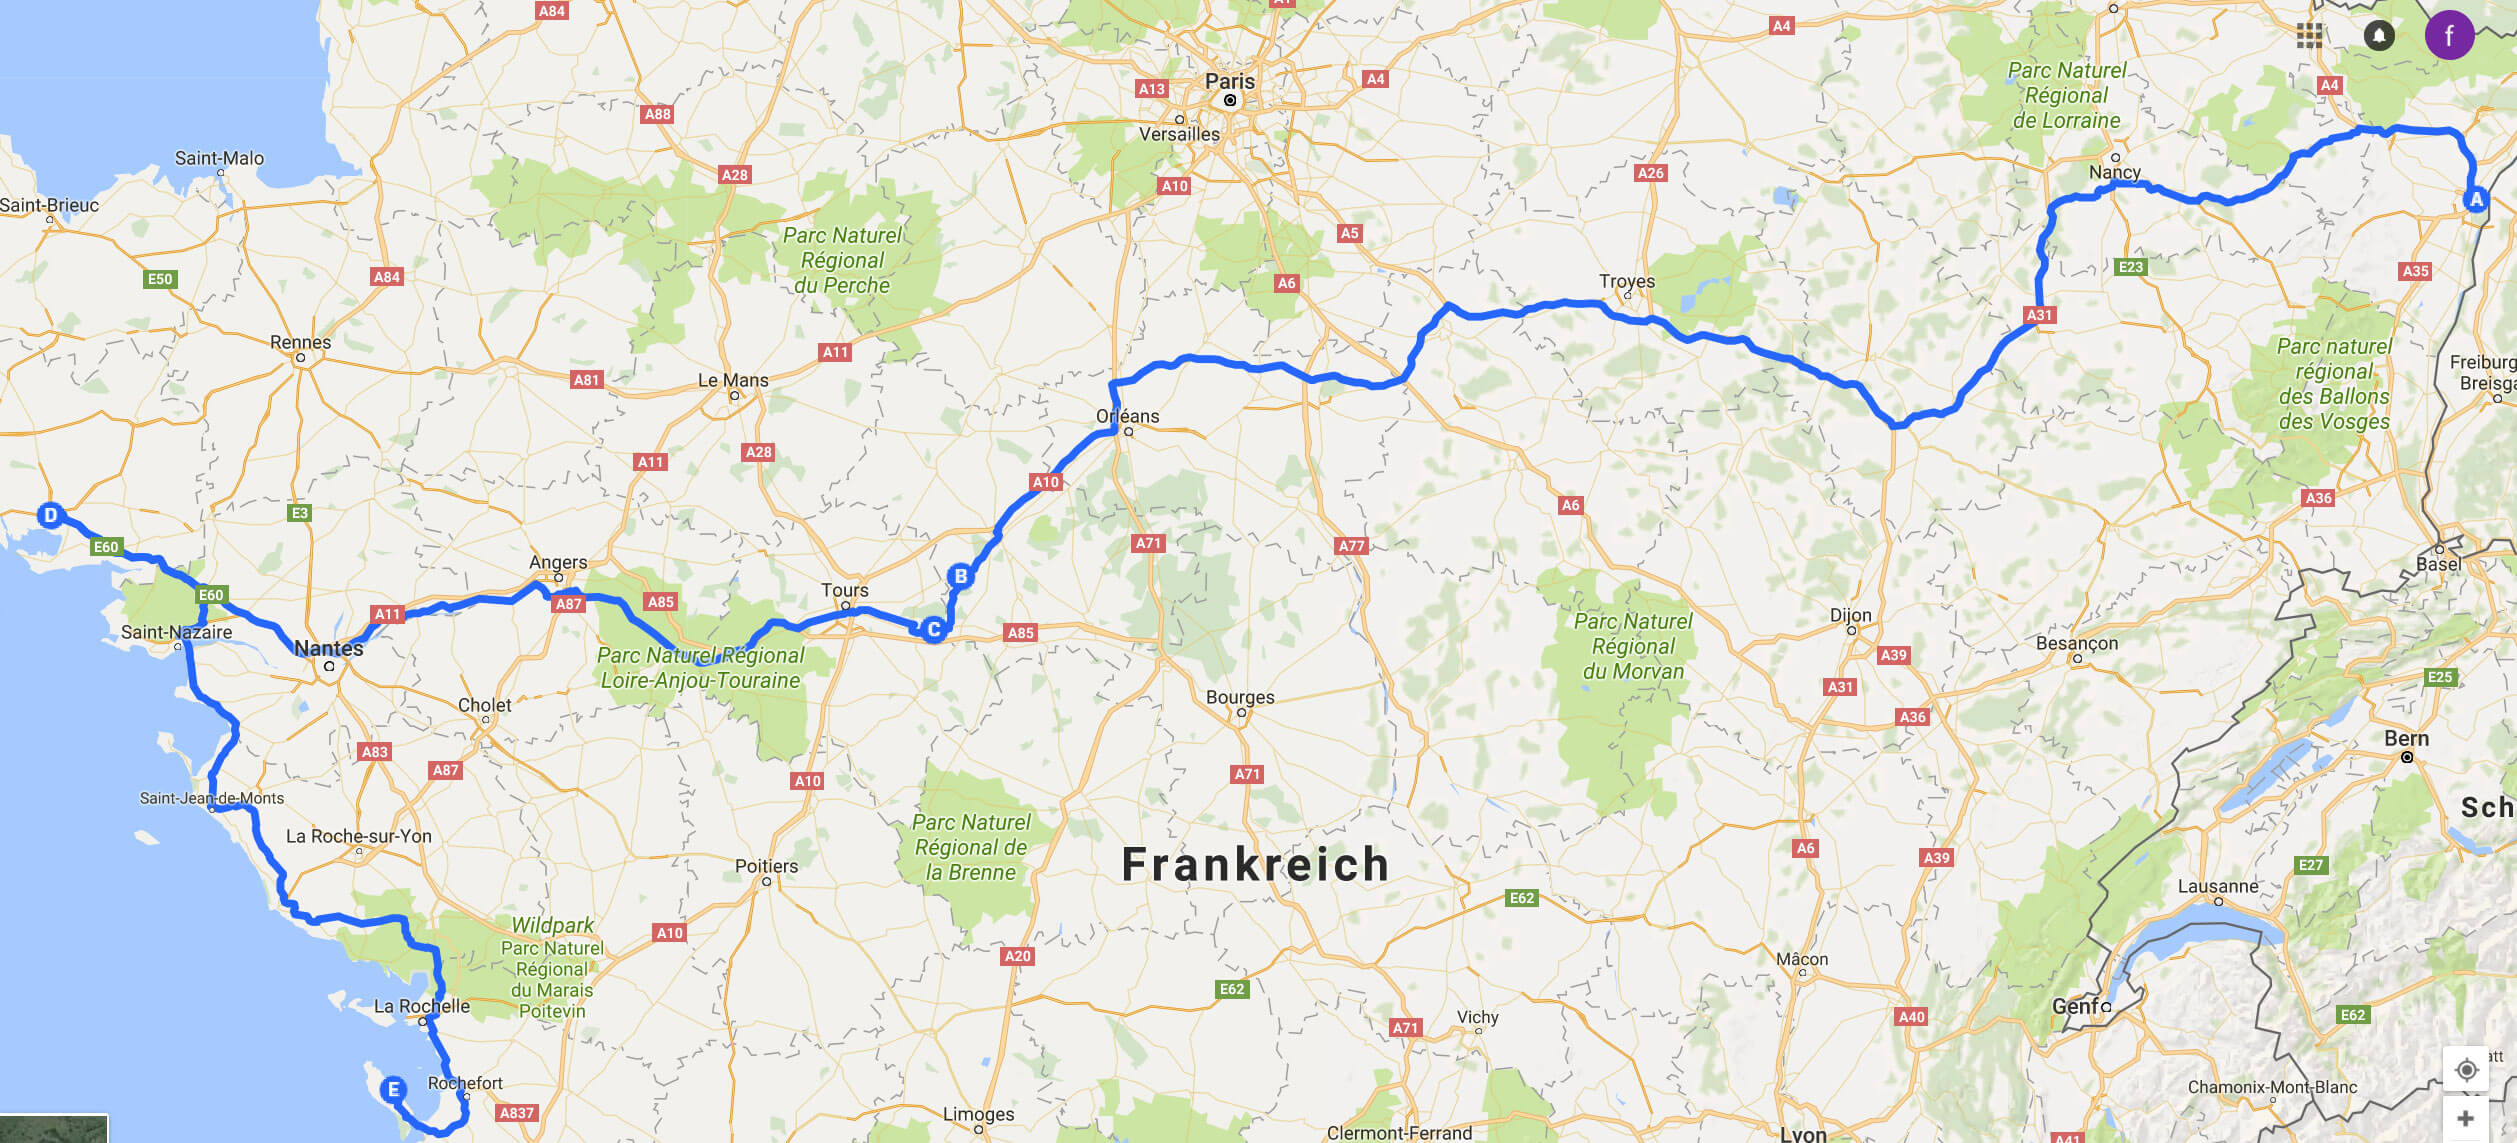 frankreich road trip